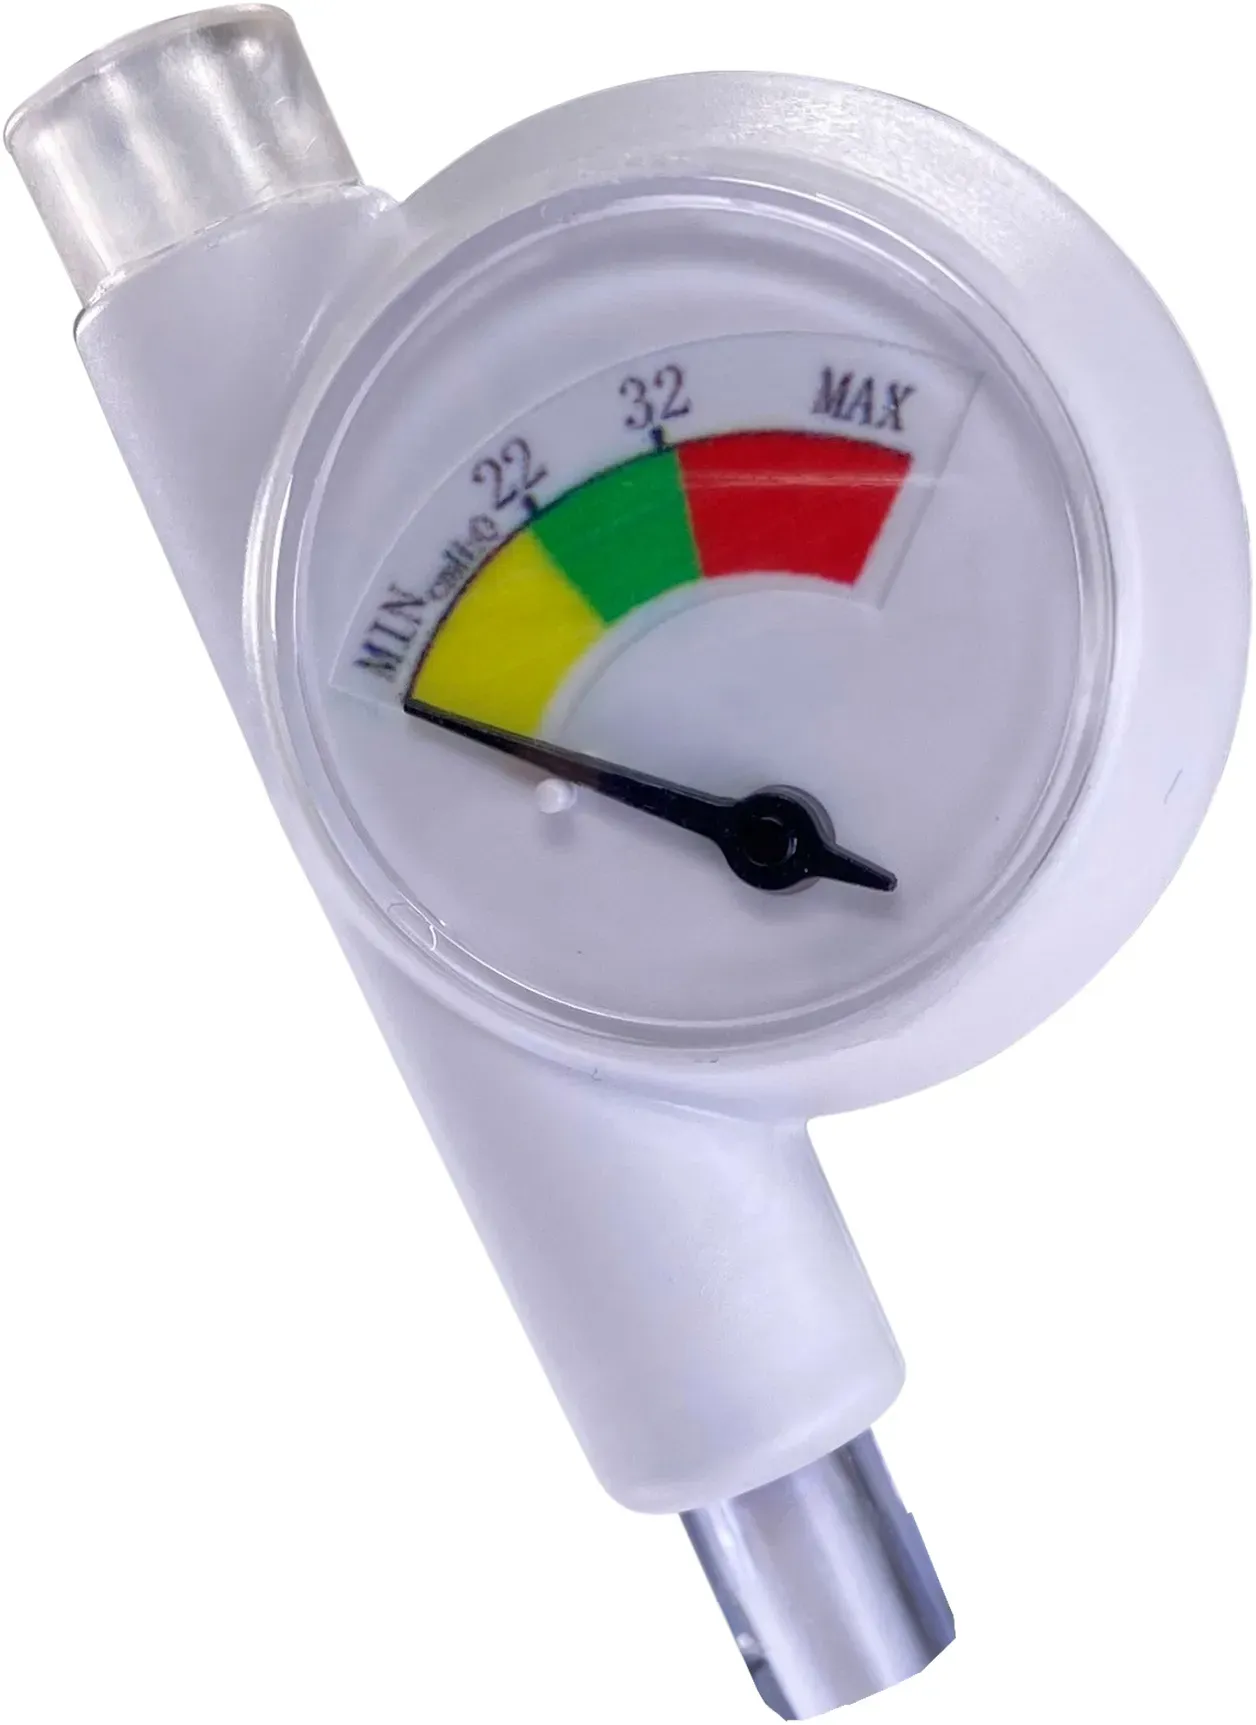 NOVO CP Cuff Pressure Monitor 30 Cuffdruckmesser Einpatientprodukt 10 Stück